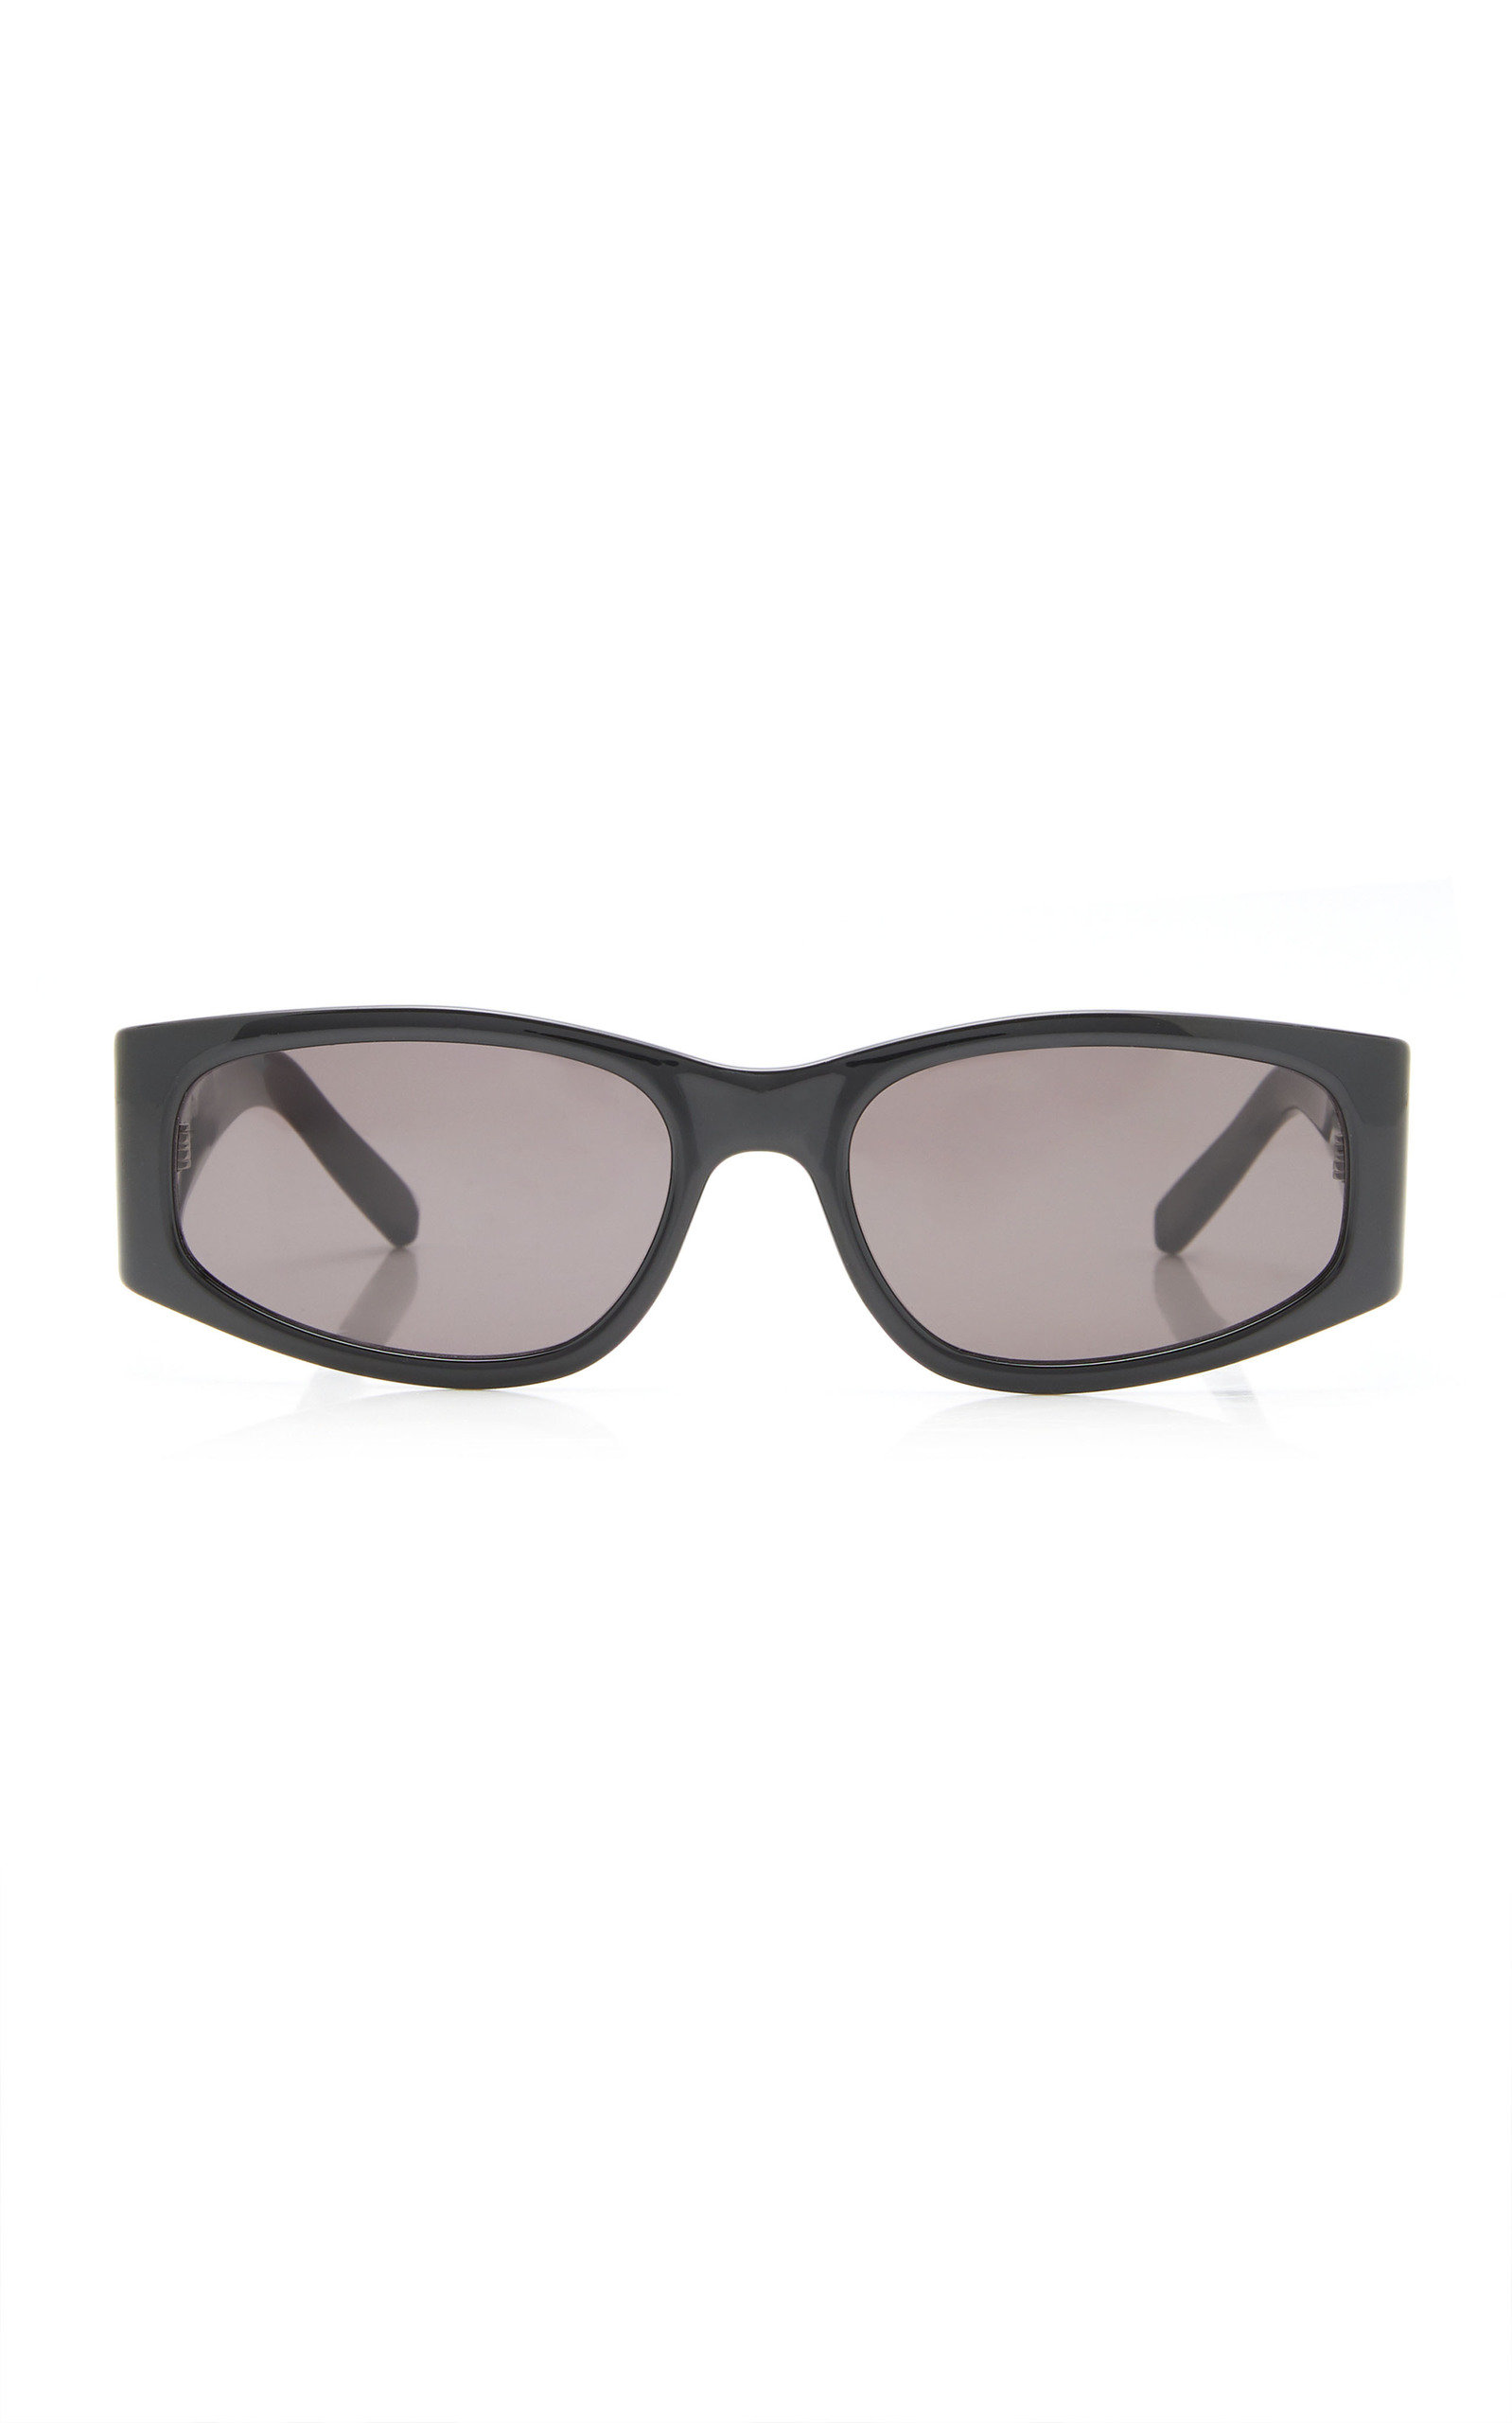 Saint Laurent - Square Acetate Sunglasses - Black - OS - Moda Operandi